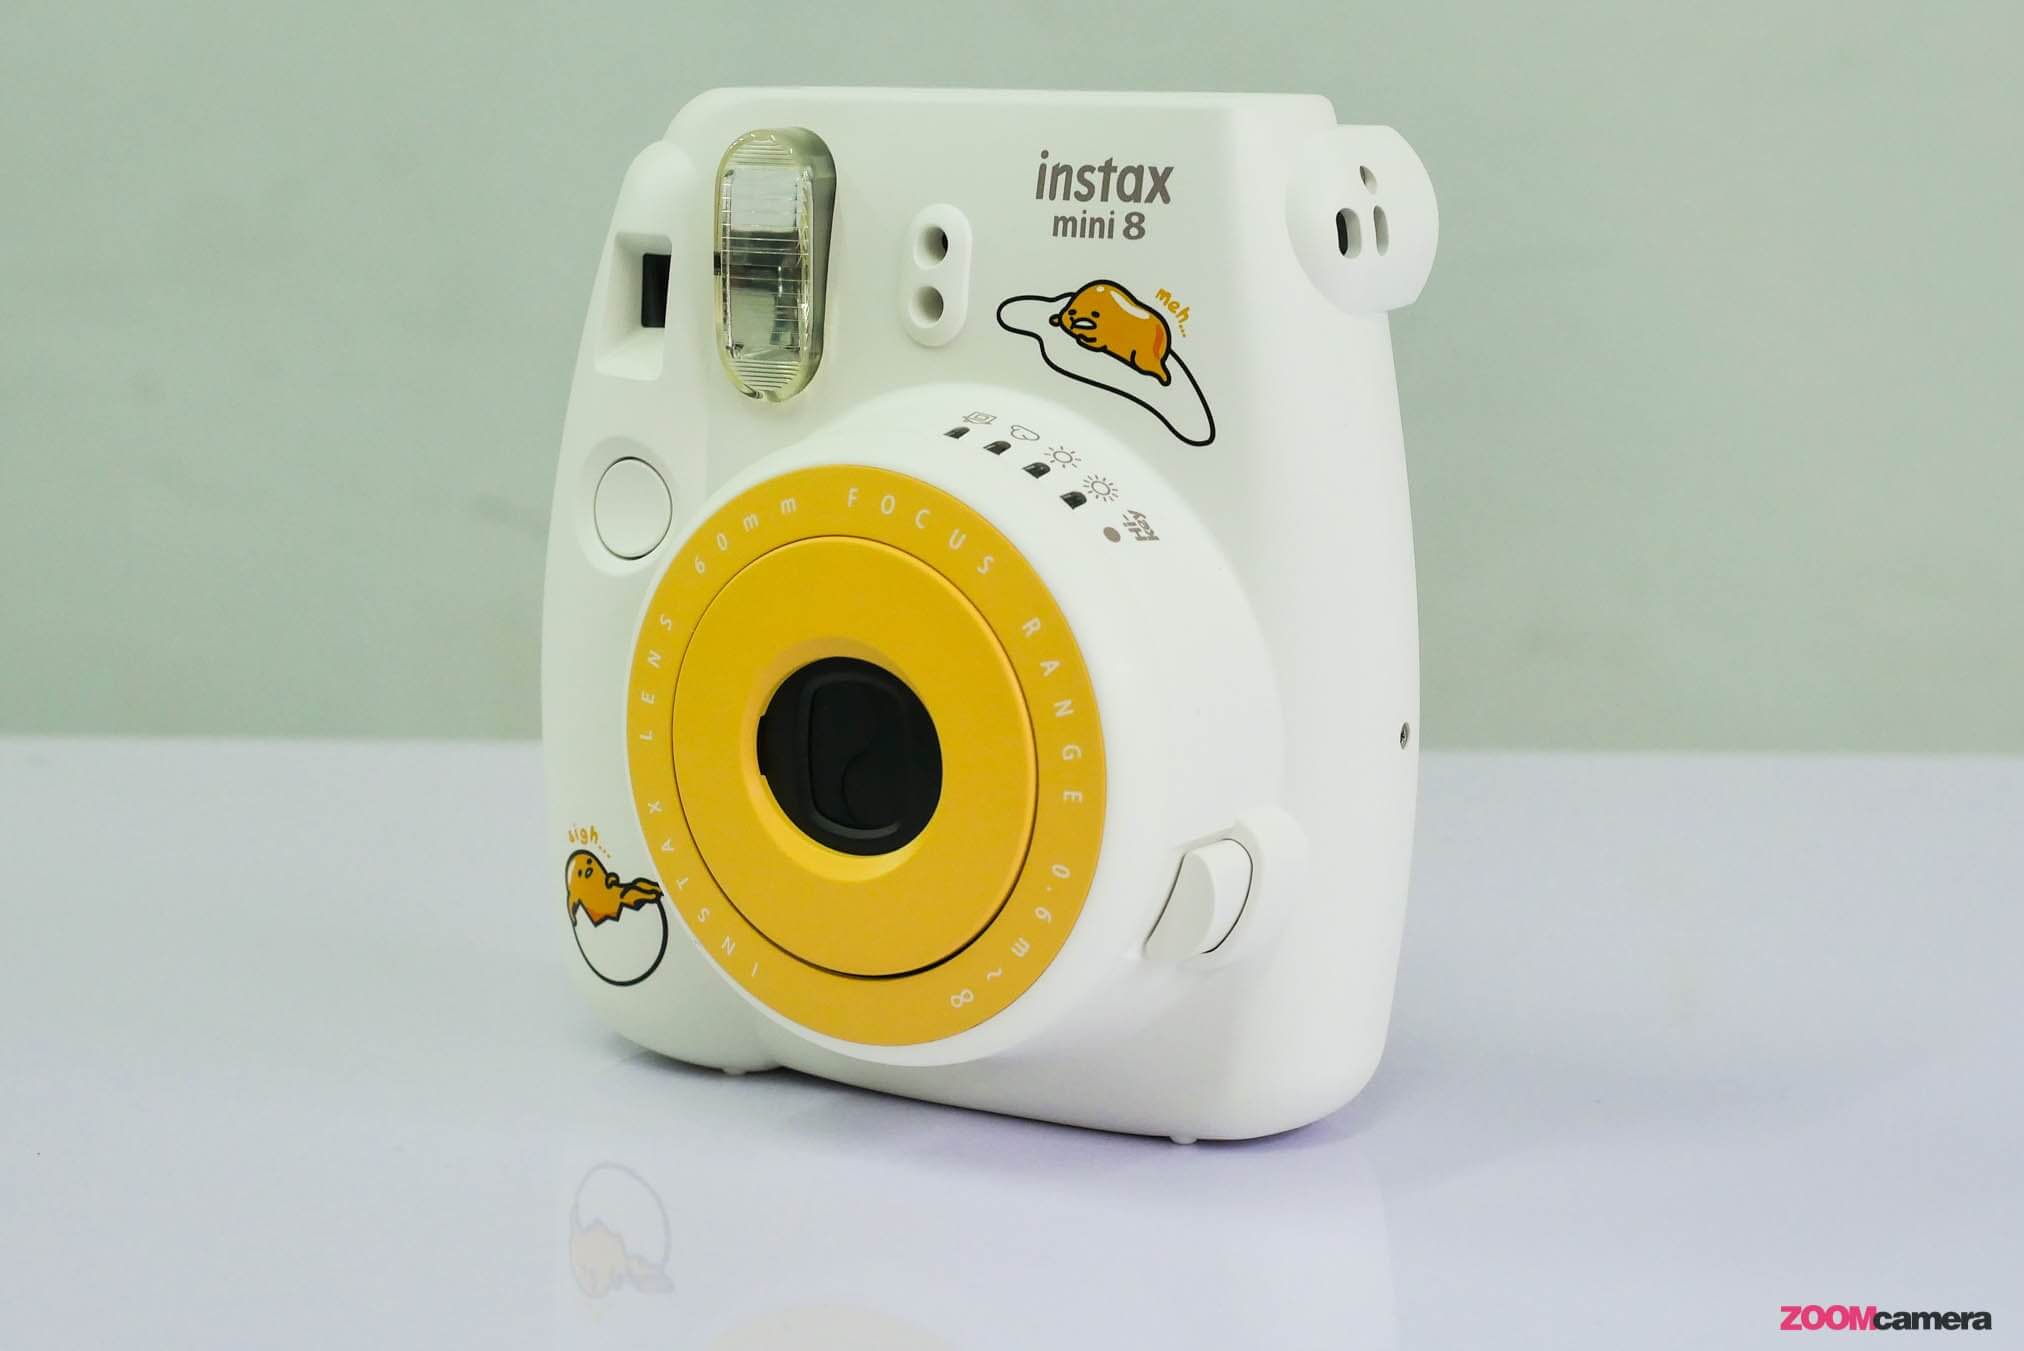 แกะกล่องรีวิวกล้องไข่ขี้เกียจ Instax mini8 - Gudetama ความกวนเส้นน่ารัก ที่มาอยู่บนกล้องฟิล์มสุดชิค 